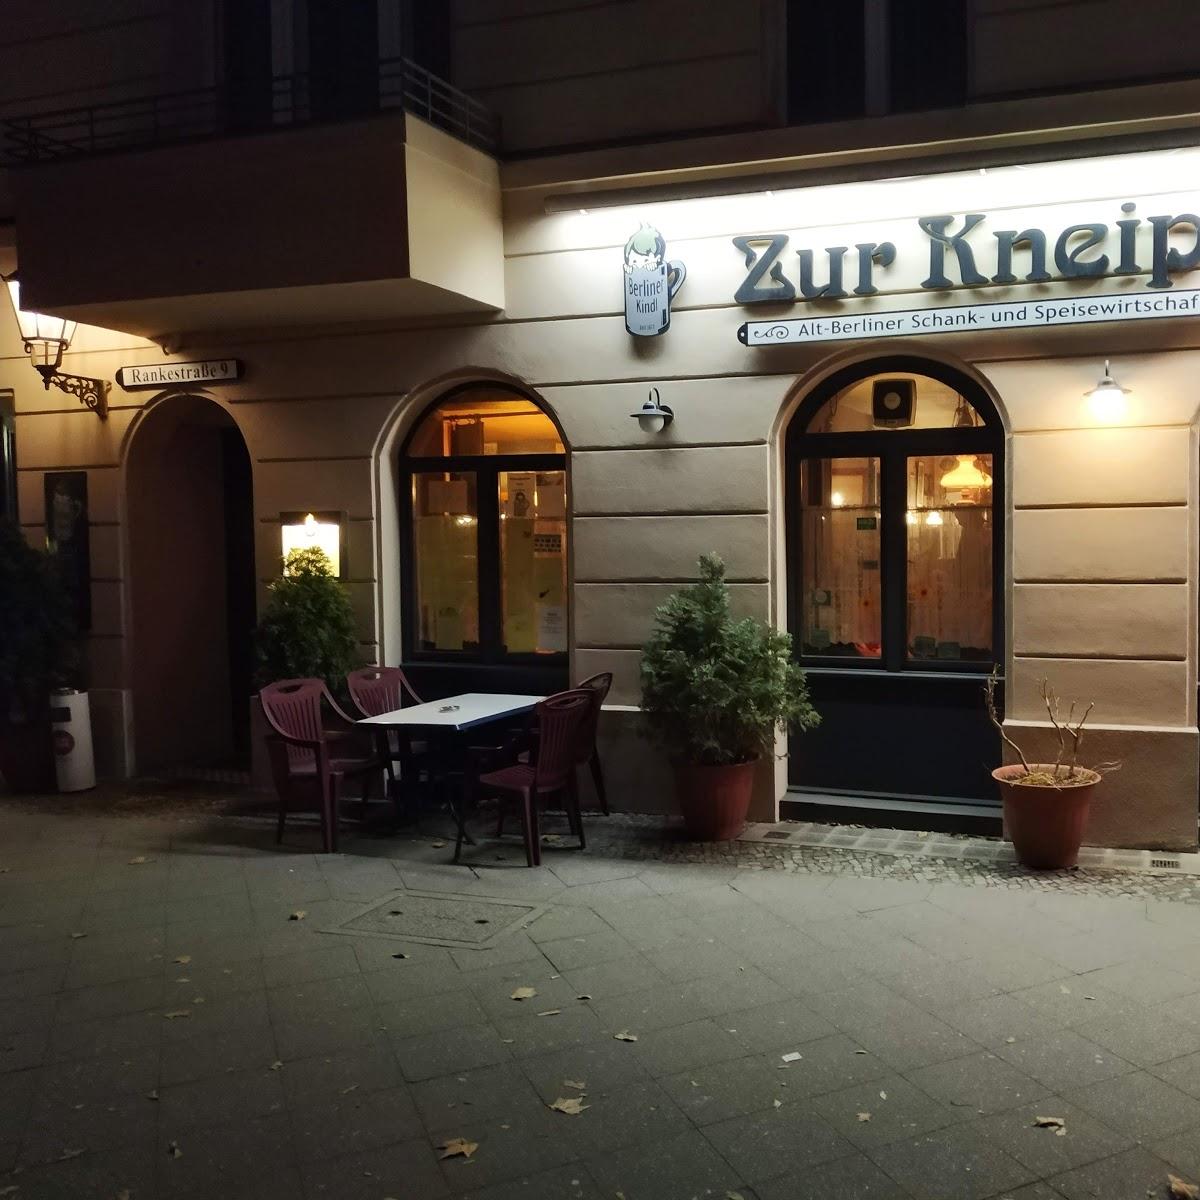 Restaurant "Gaststätte Zur Kneipe" in Berlin